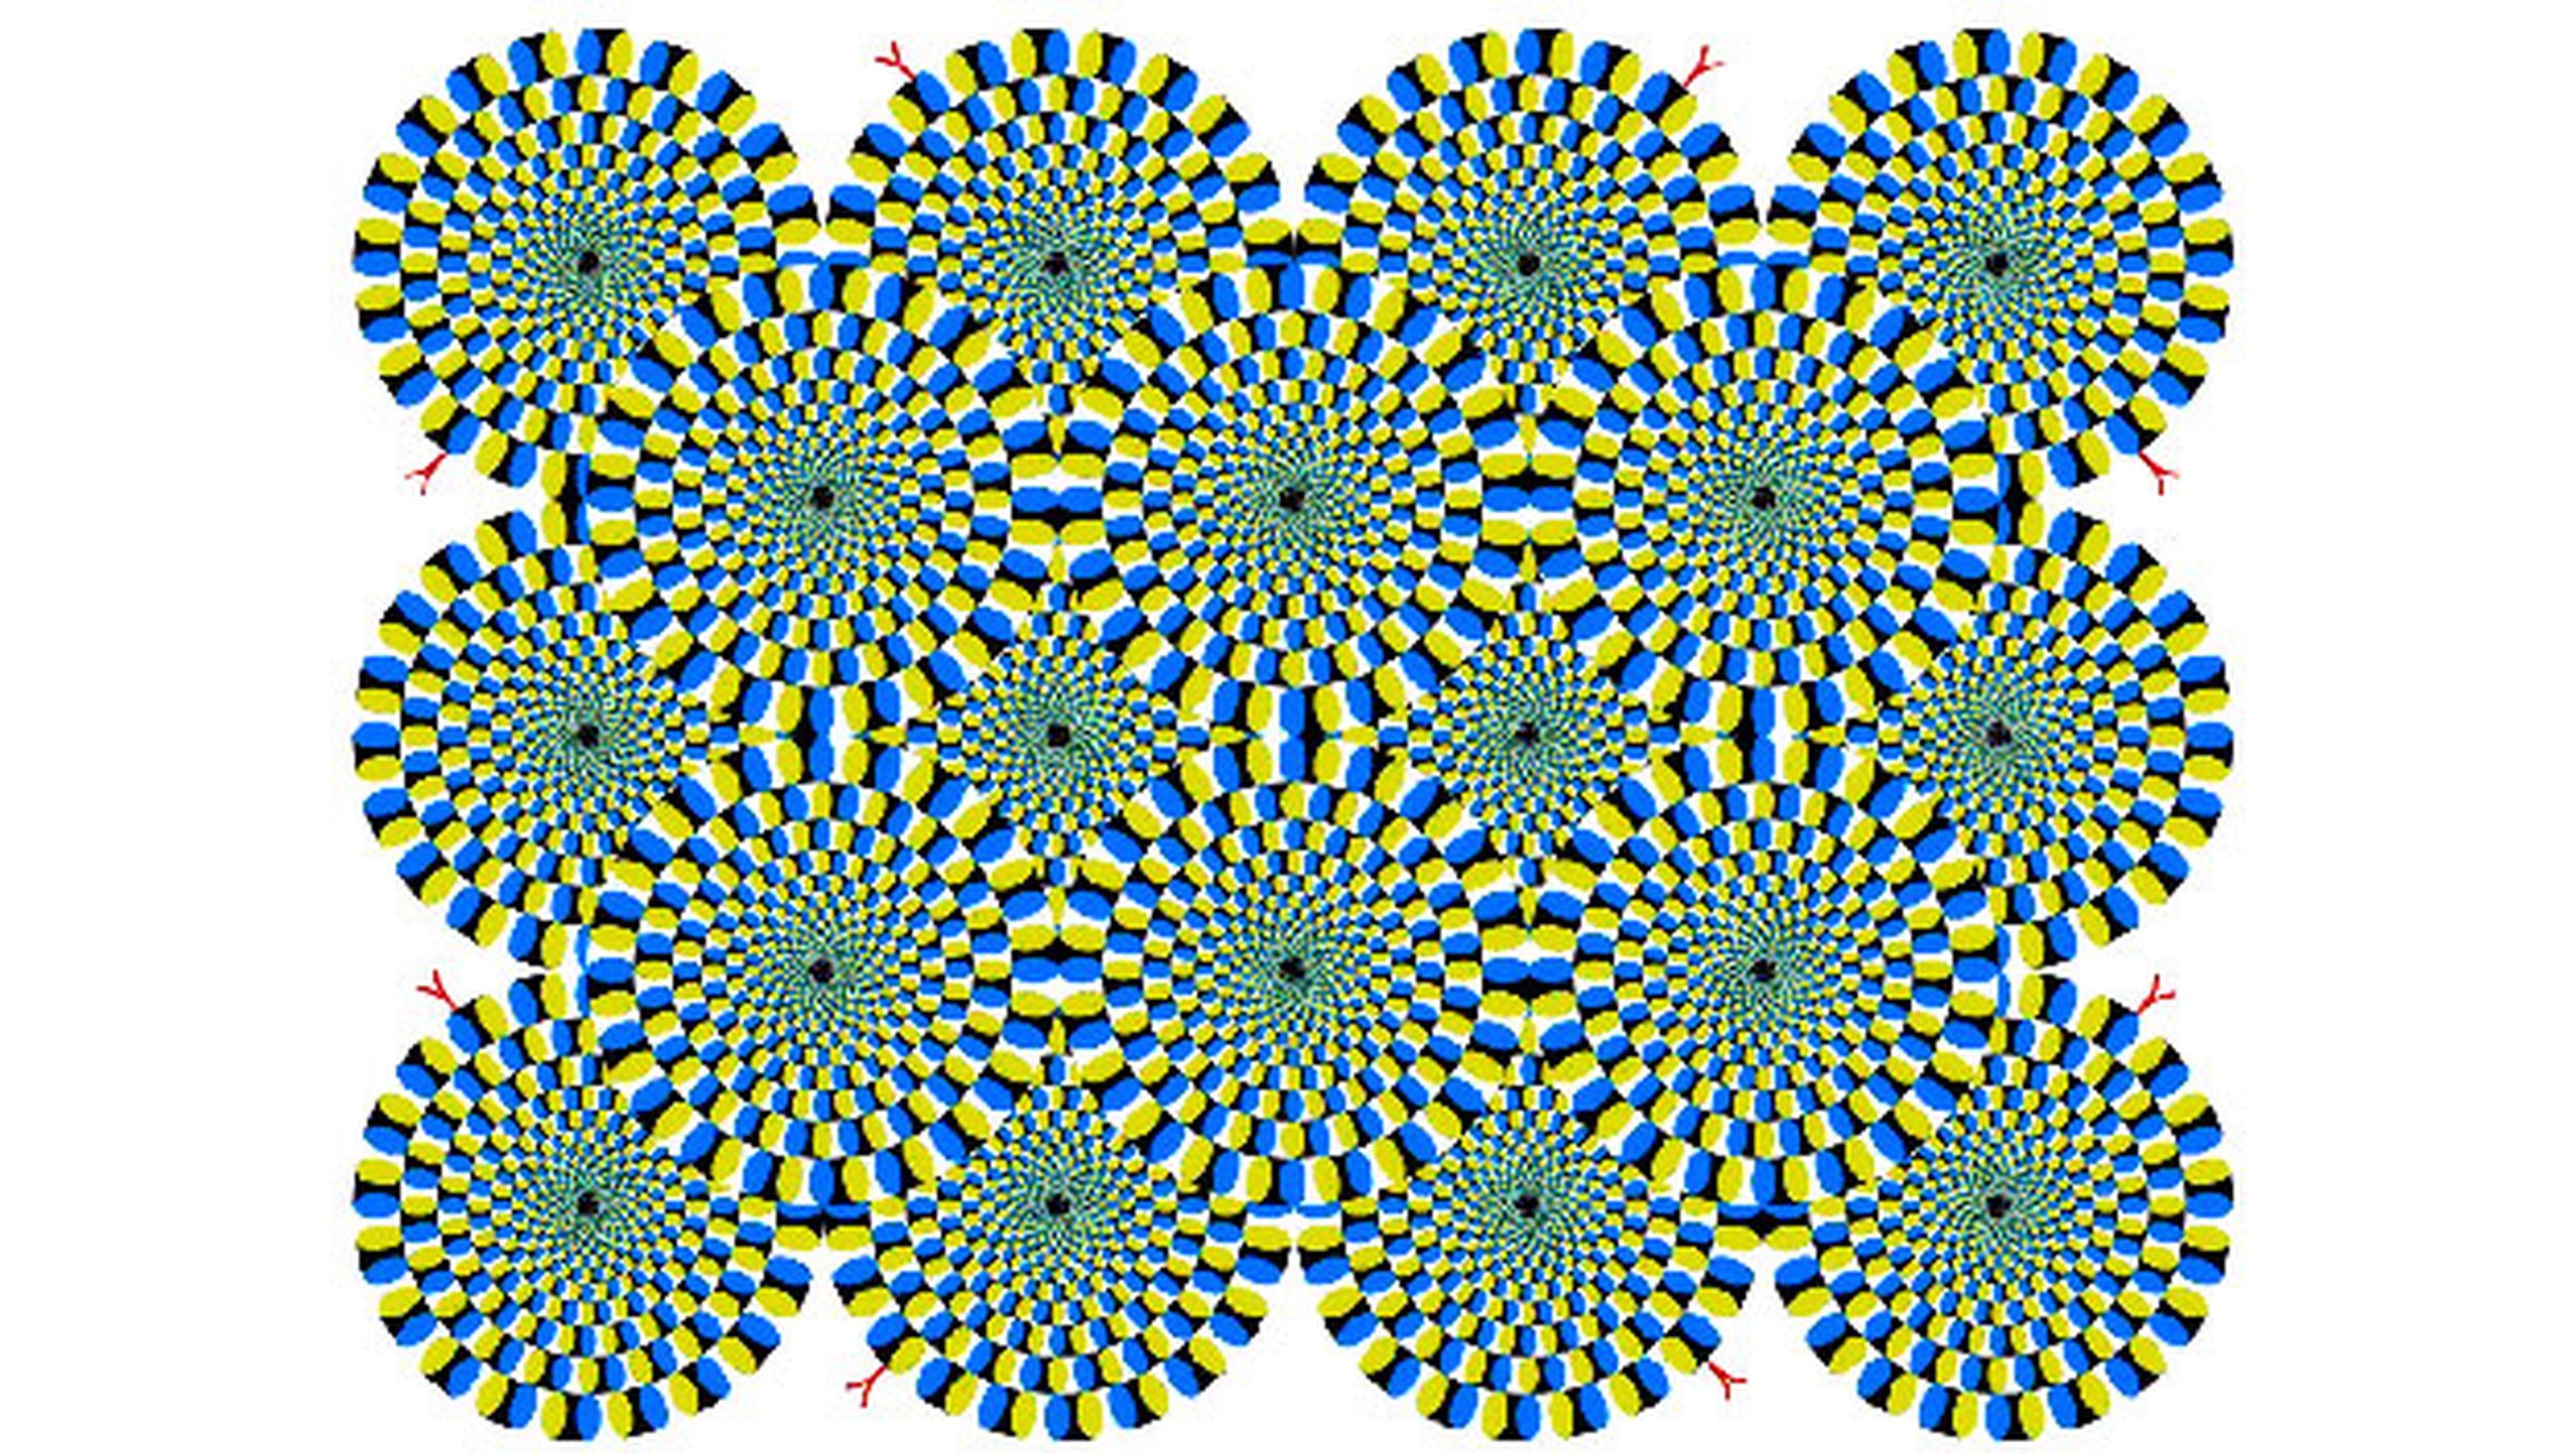 serpientes ilusion optica